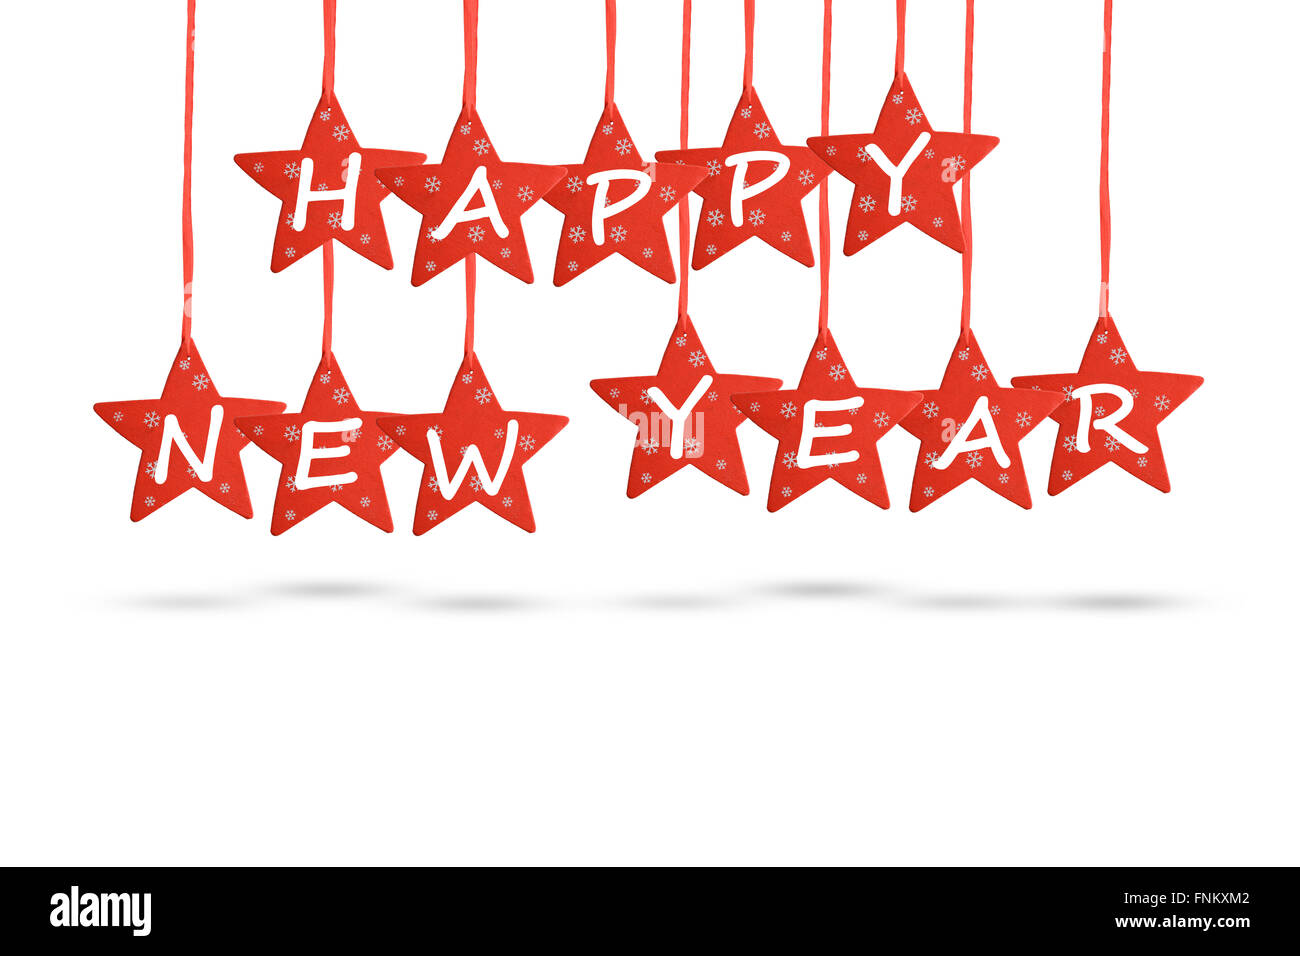 Frohes neues Jahr wünschen mit roten Sternen isoliert auf weißem Hintergrund Stockfoto